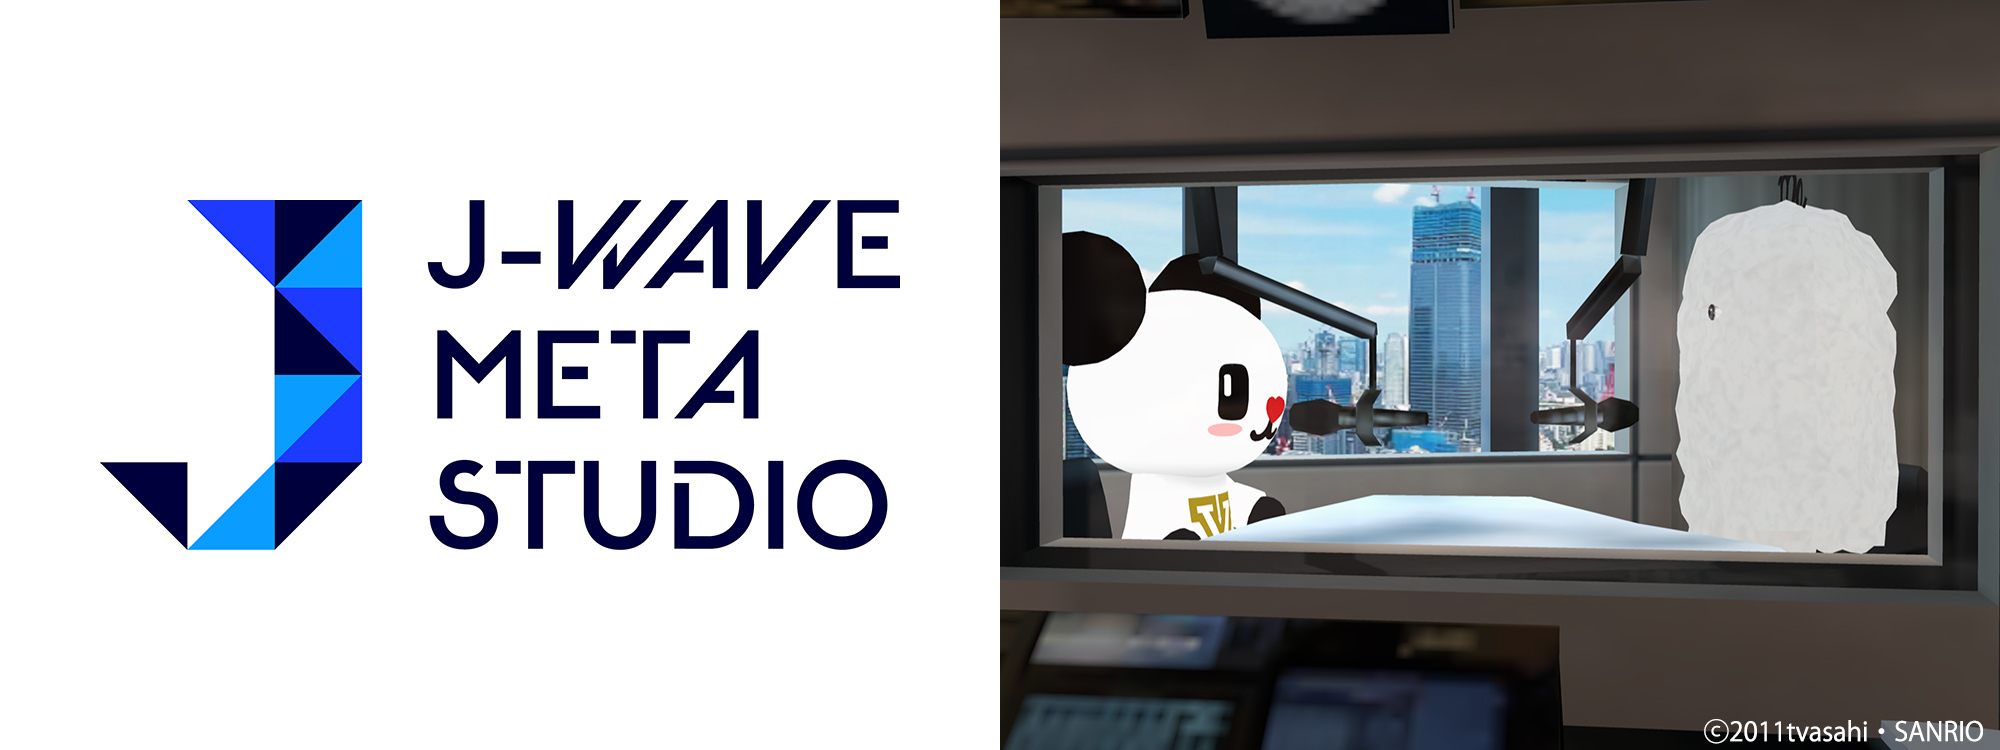 「J-WAVE META STUDIO」